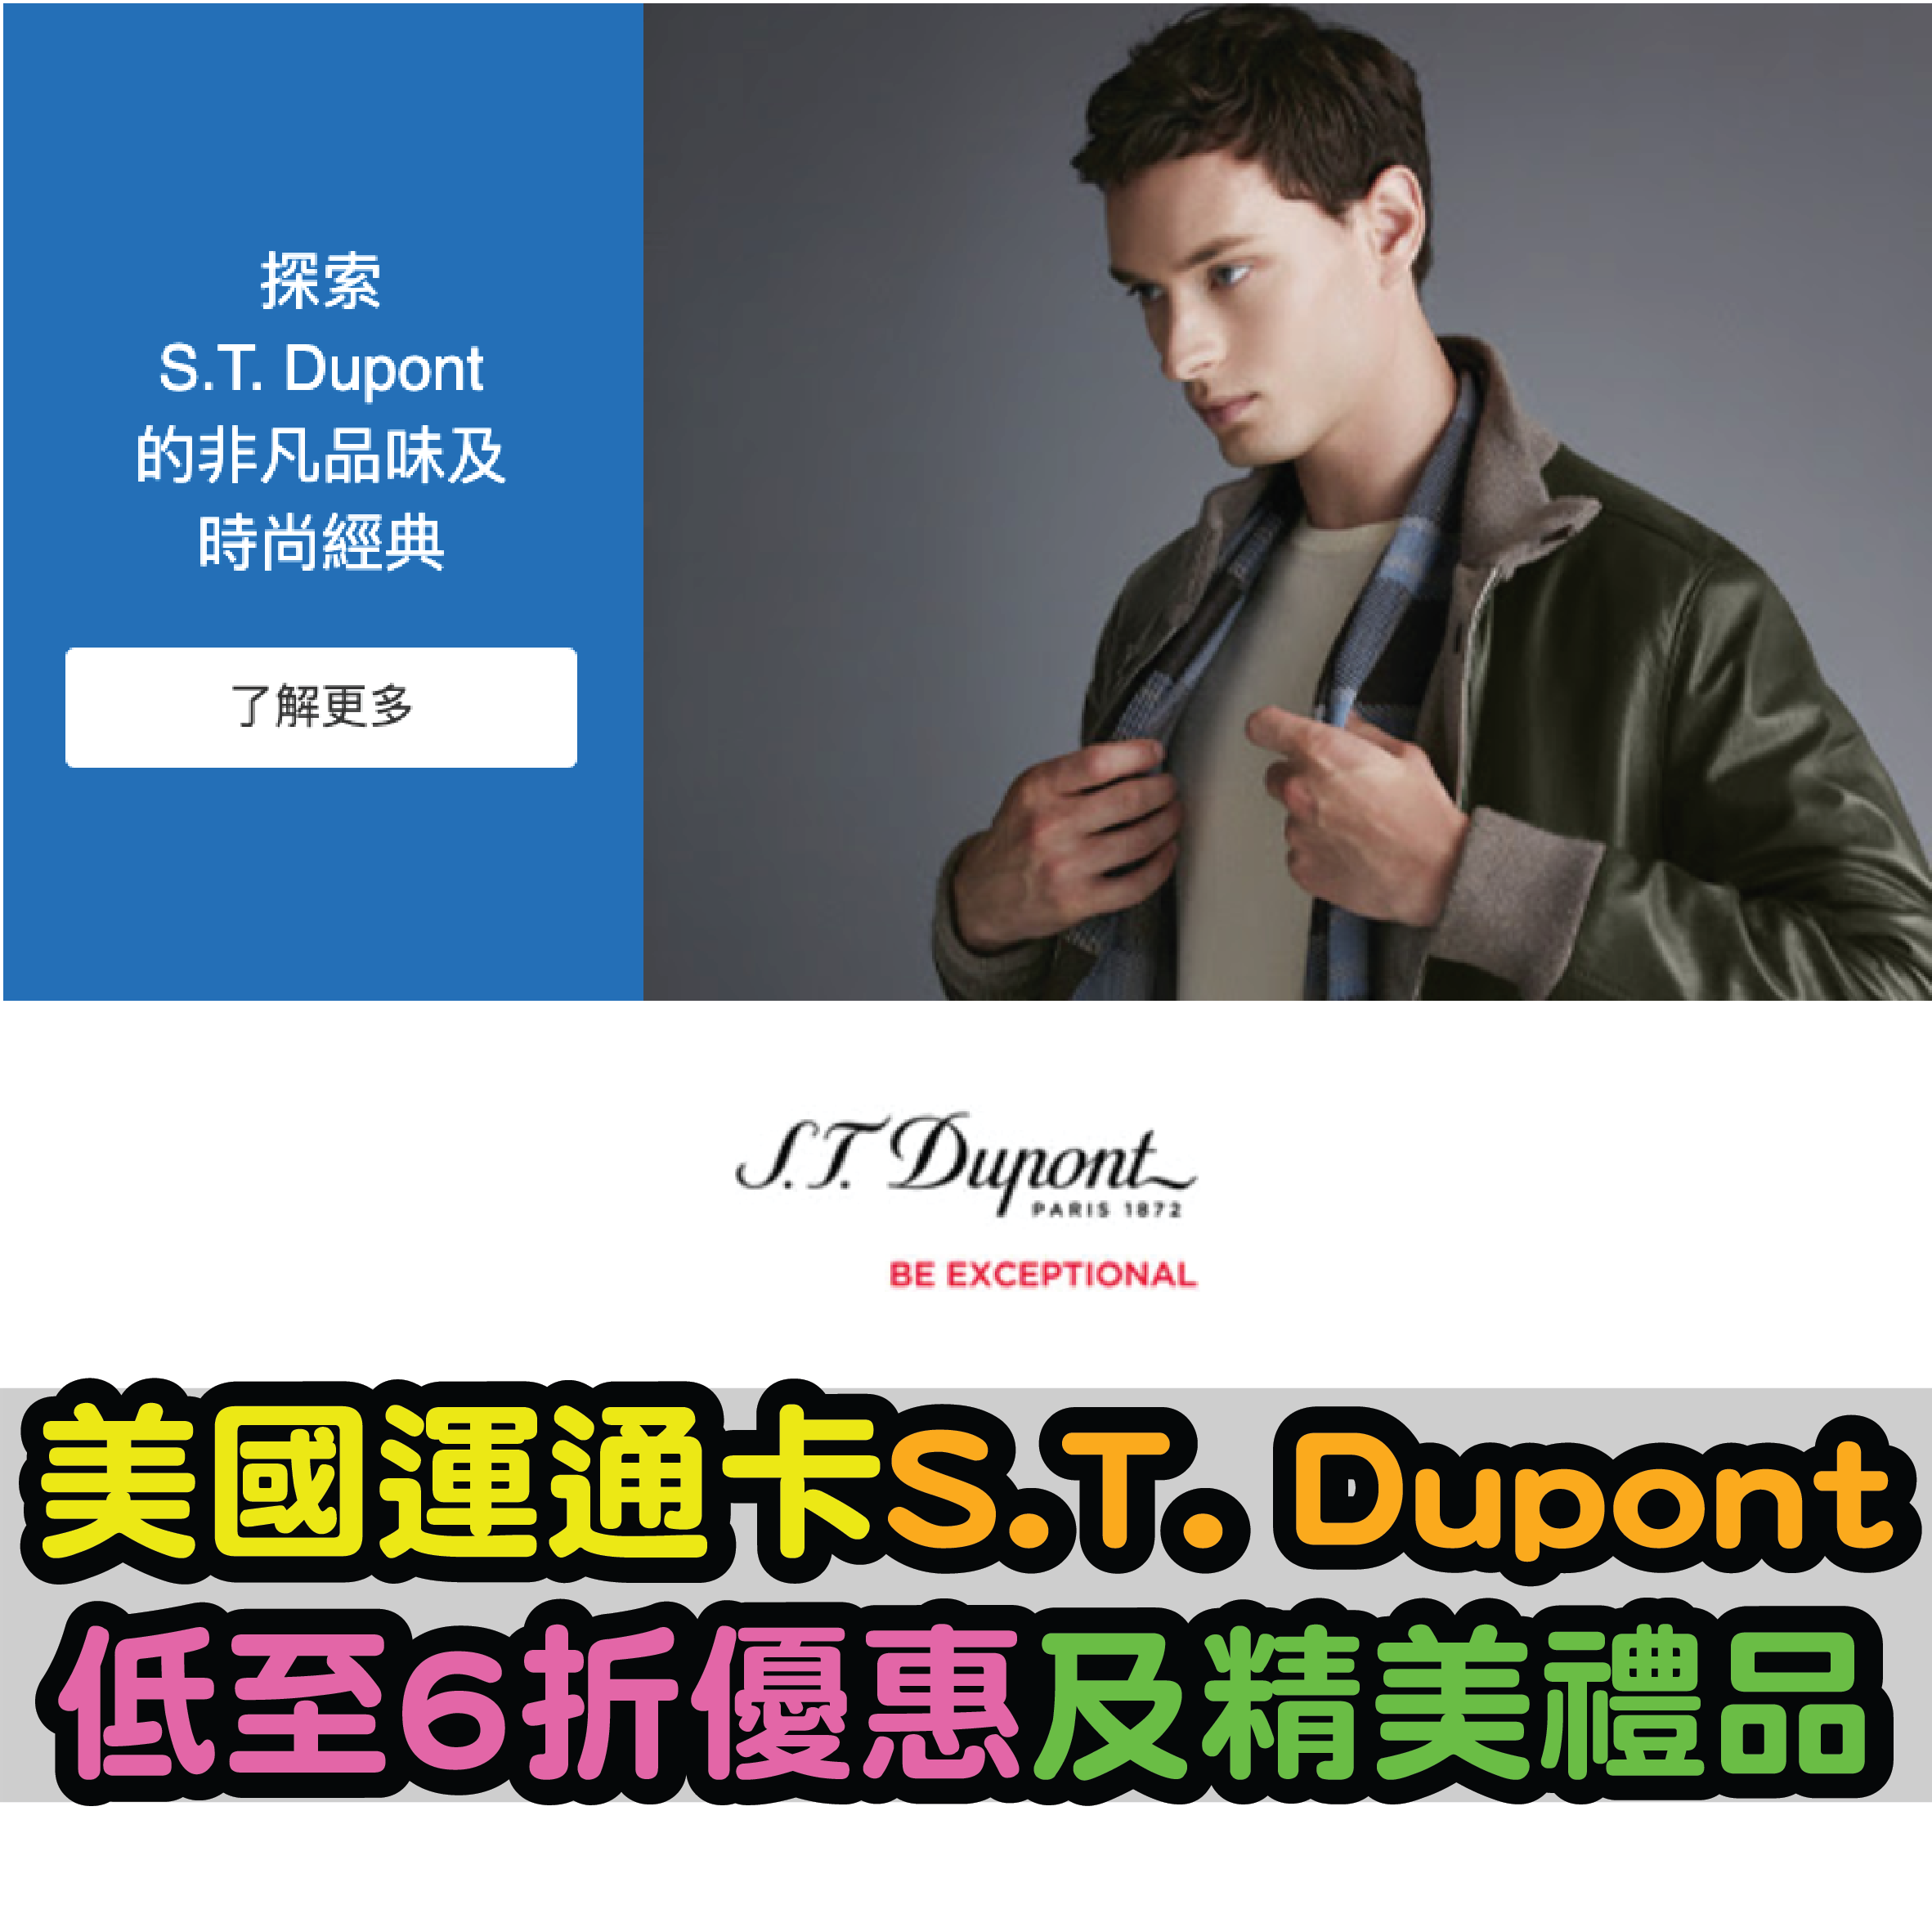 【美國運通卡優惠】S.T. Dupont購物專享低至7折優惠及精美禮品！